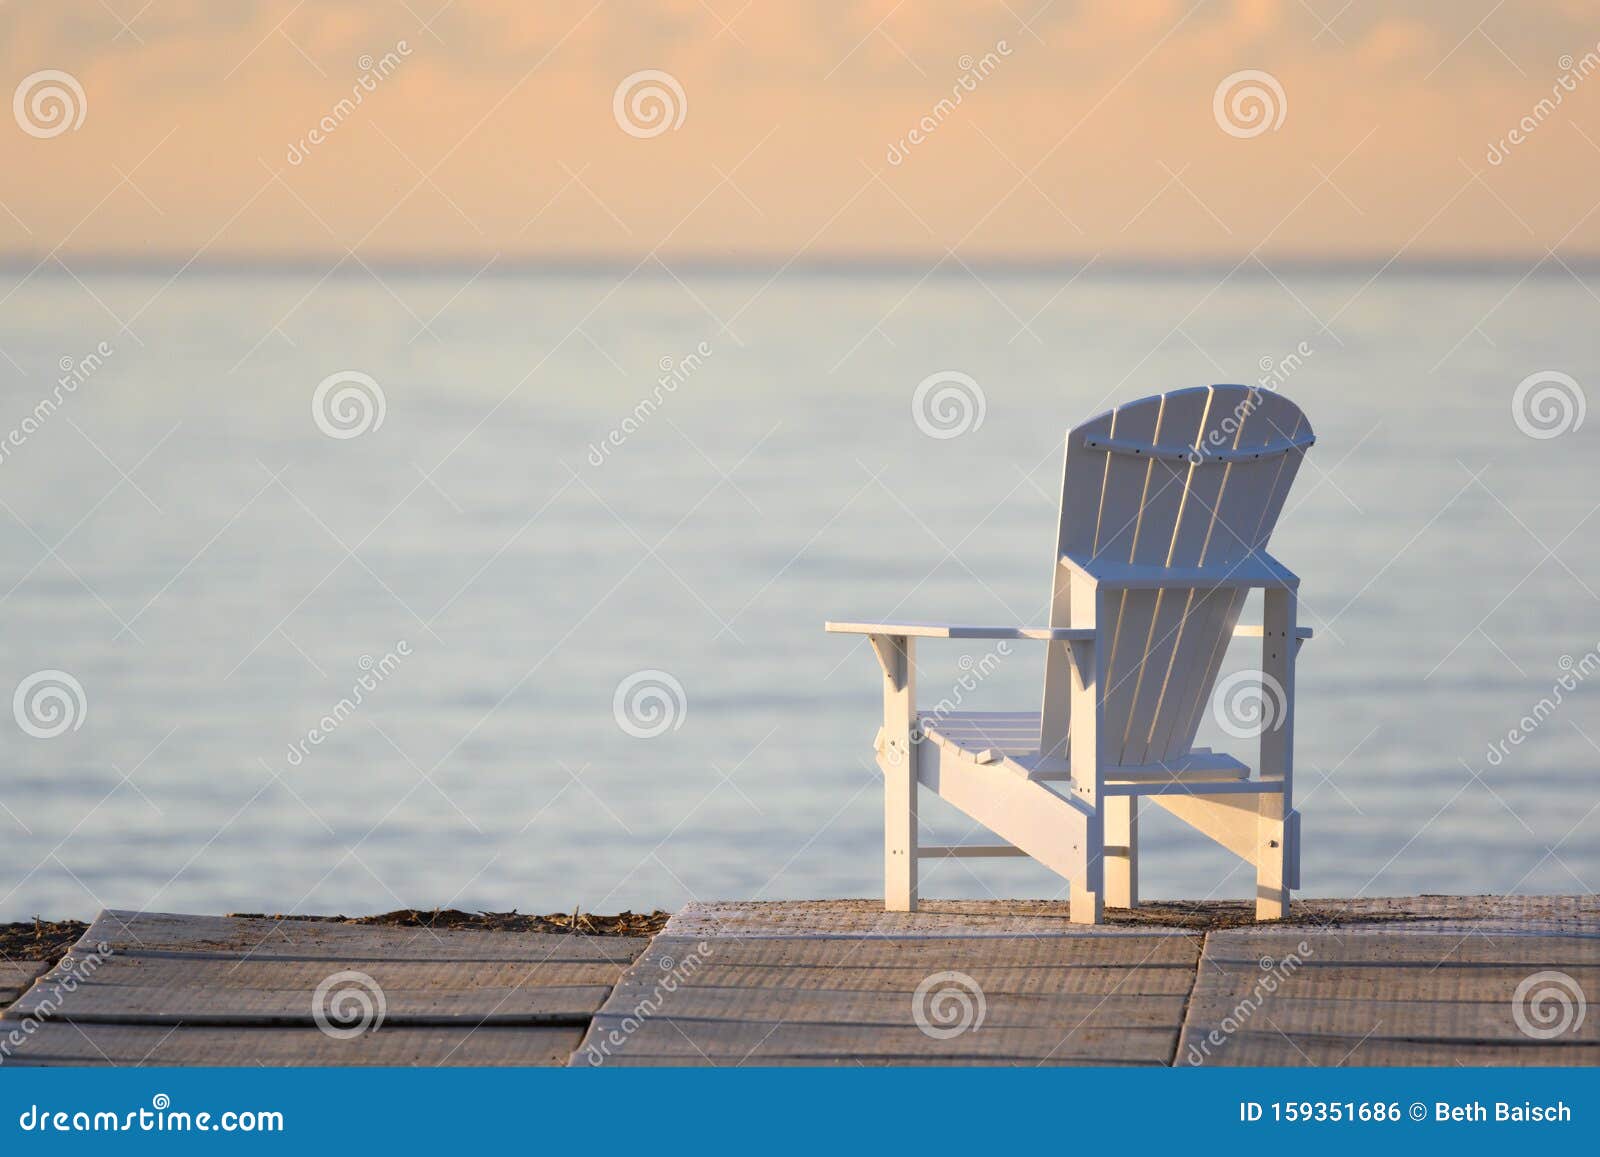 muskoka chair overlooking lake ontario, woodbine beach, toronto